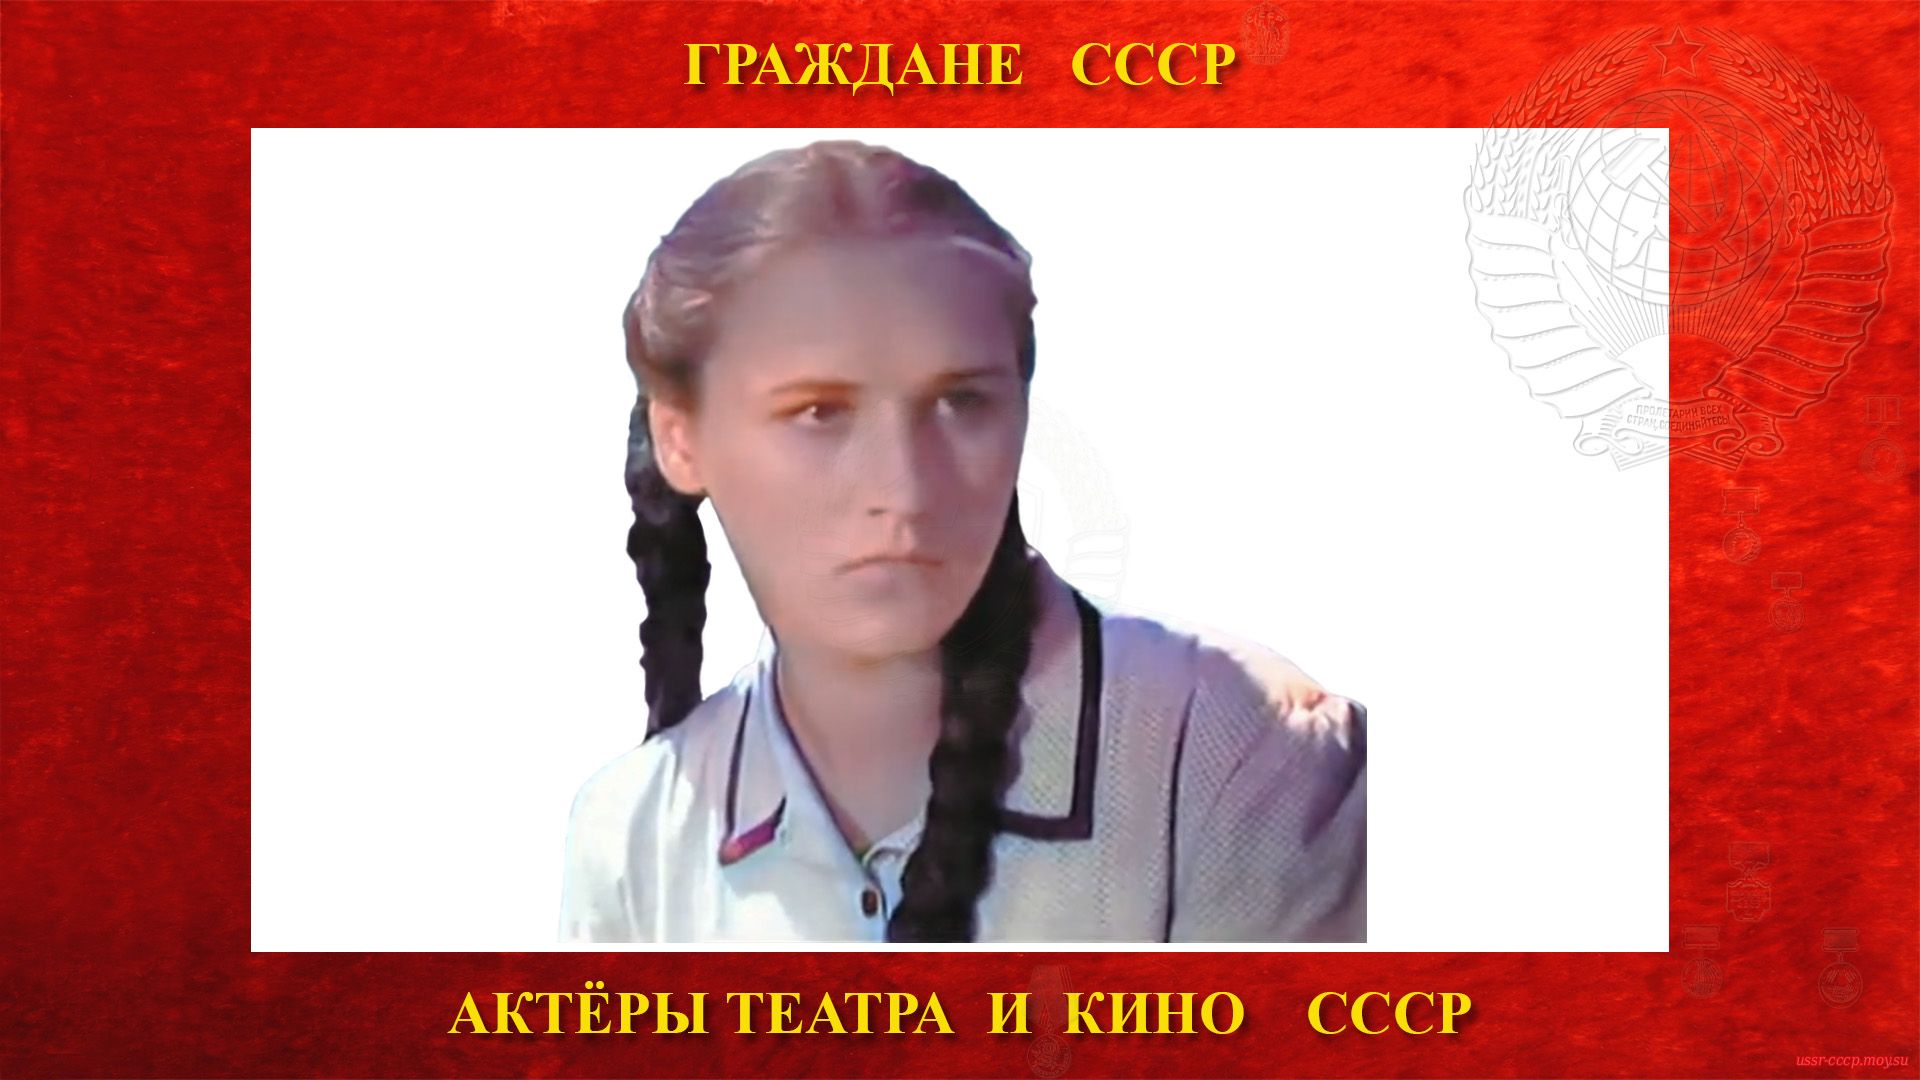 Мордюкова Нонна (Ноябрина) Викторовна — Советская киноактриса